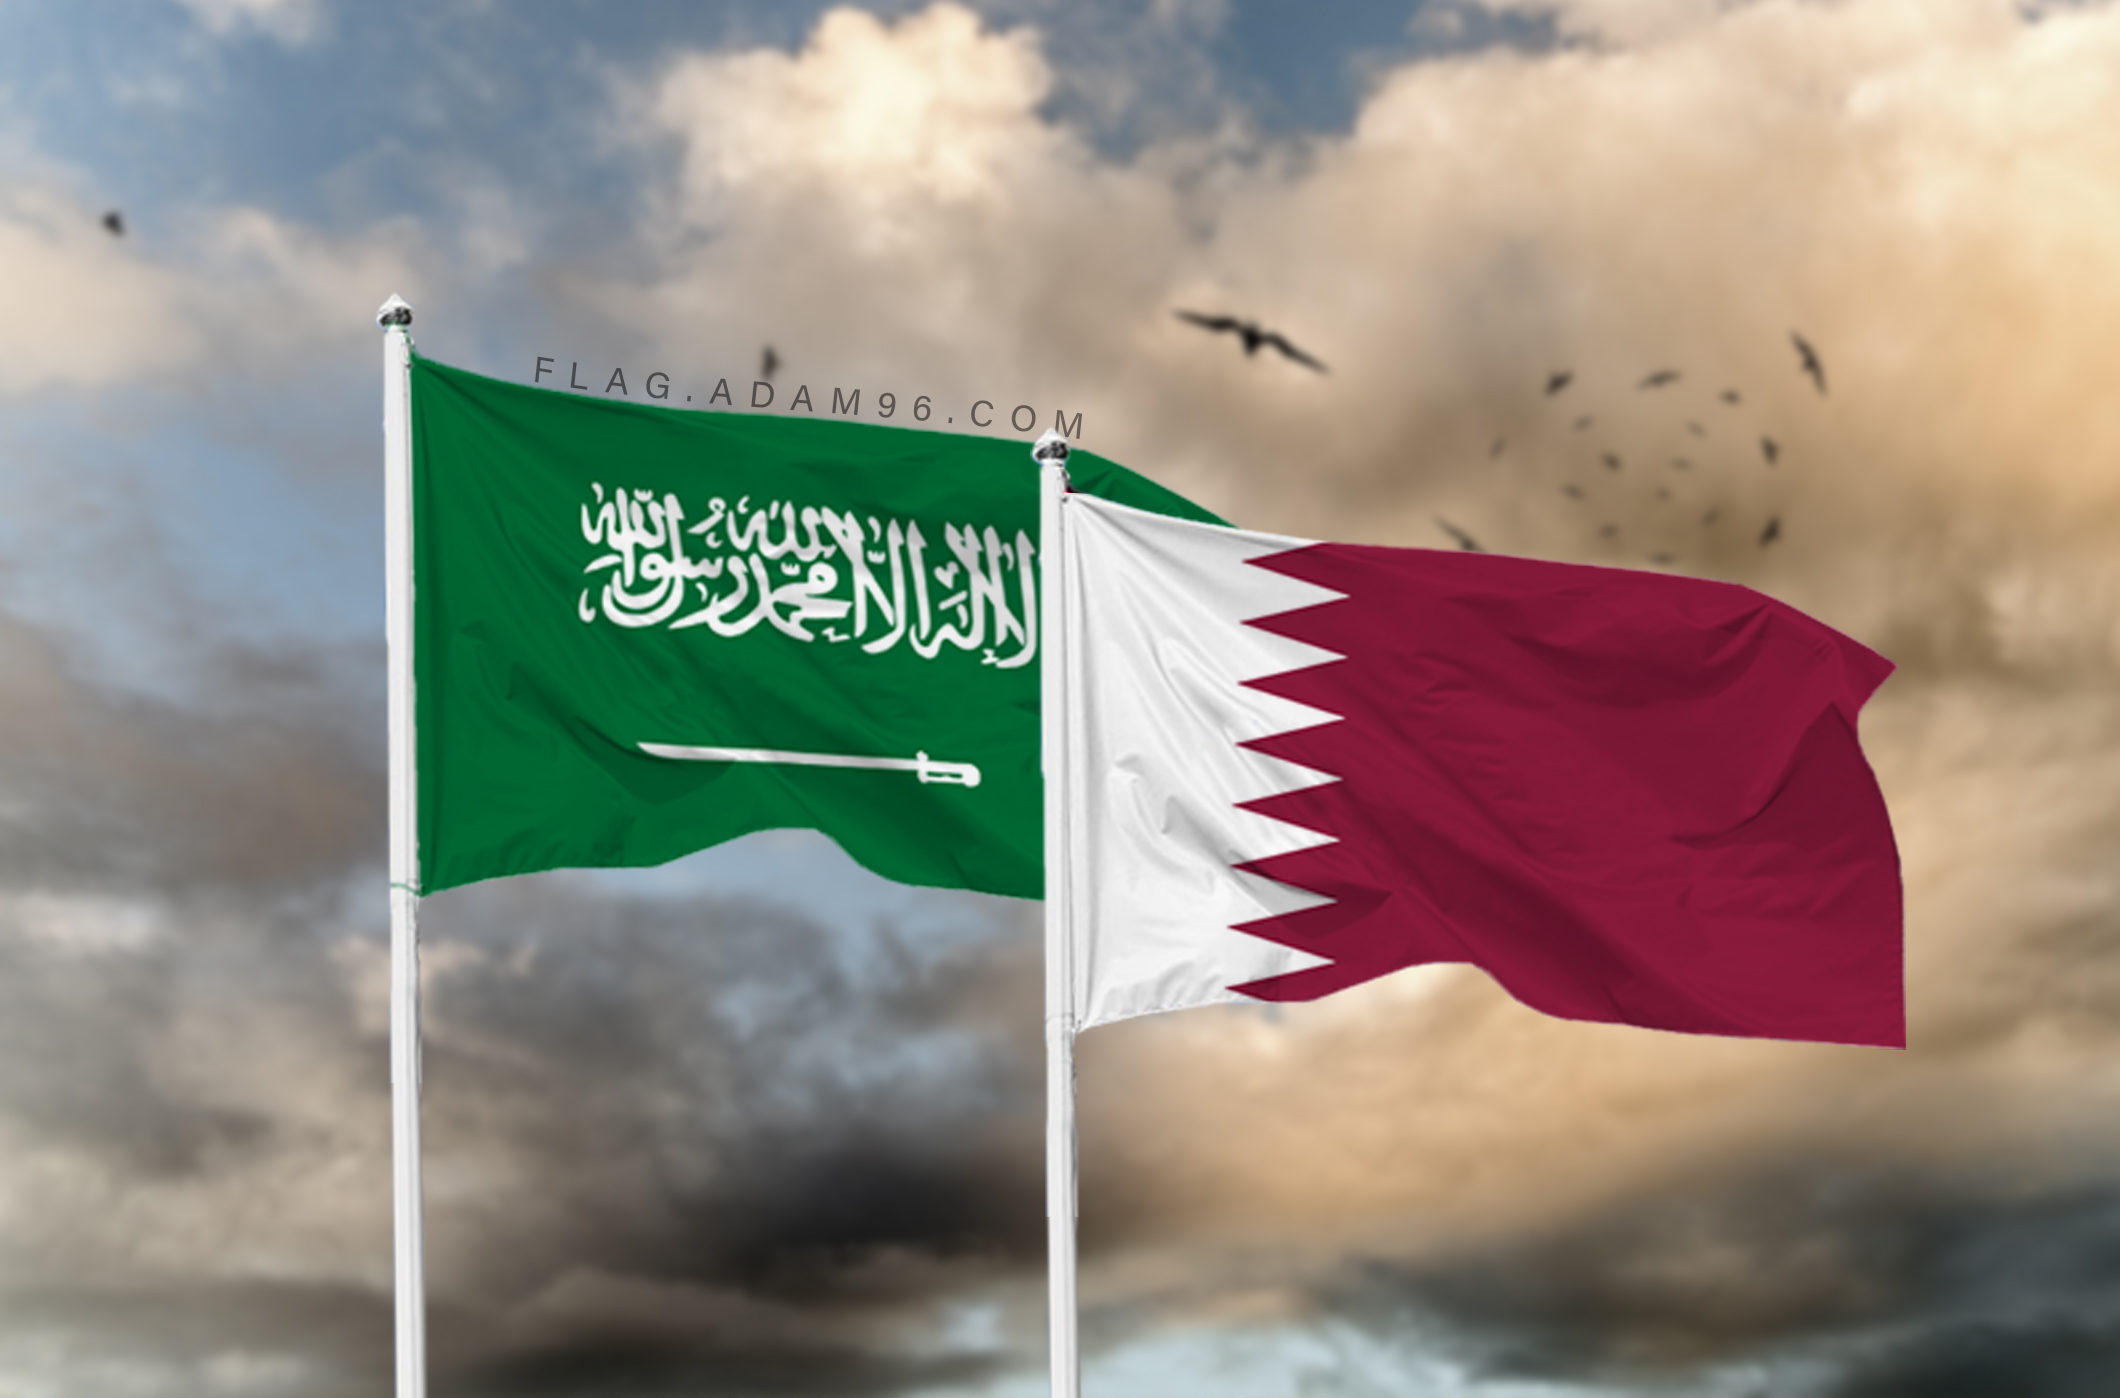 تحميل علم قطر والسعودية خلفية اعلام العالم بدقة عالية Qatar and Saudi Arabia